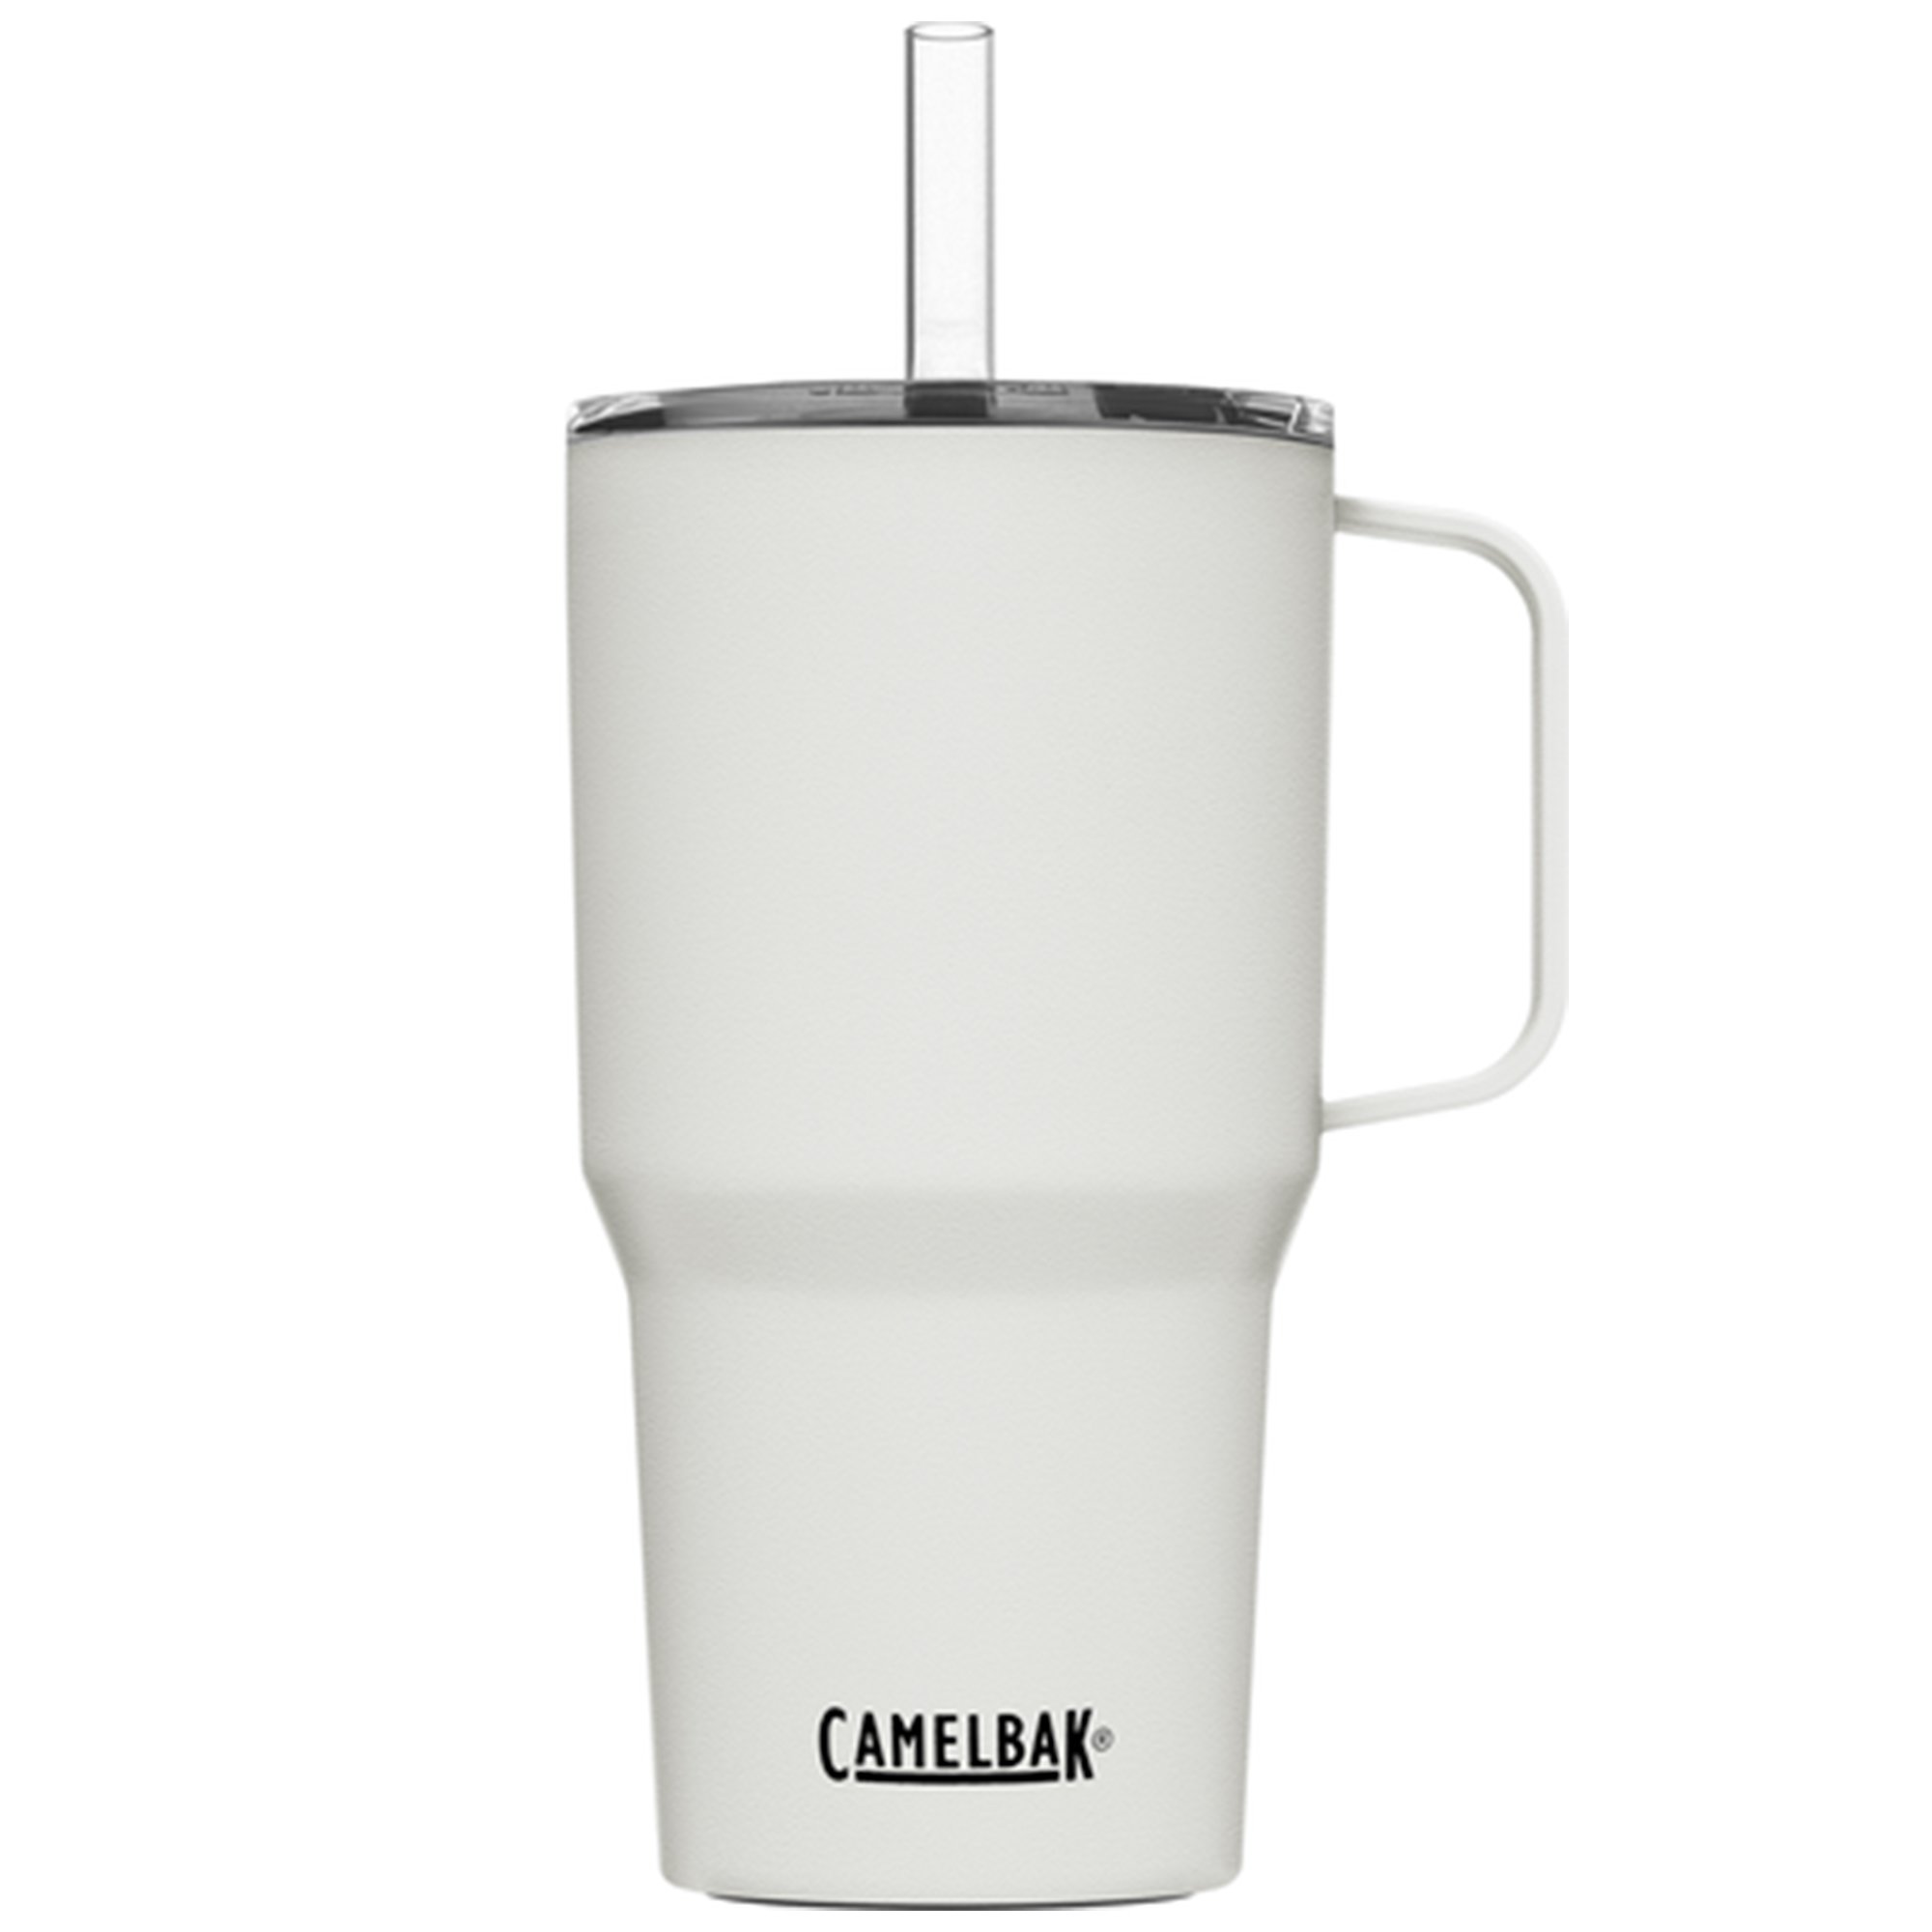 Camelbak Straw Mug termosmugg 0,71 liter white